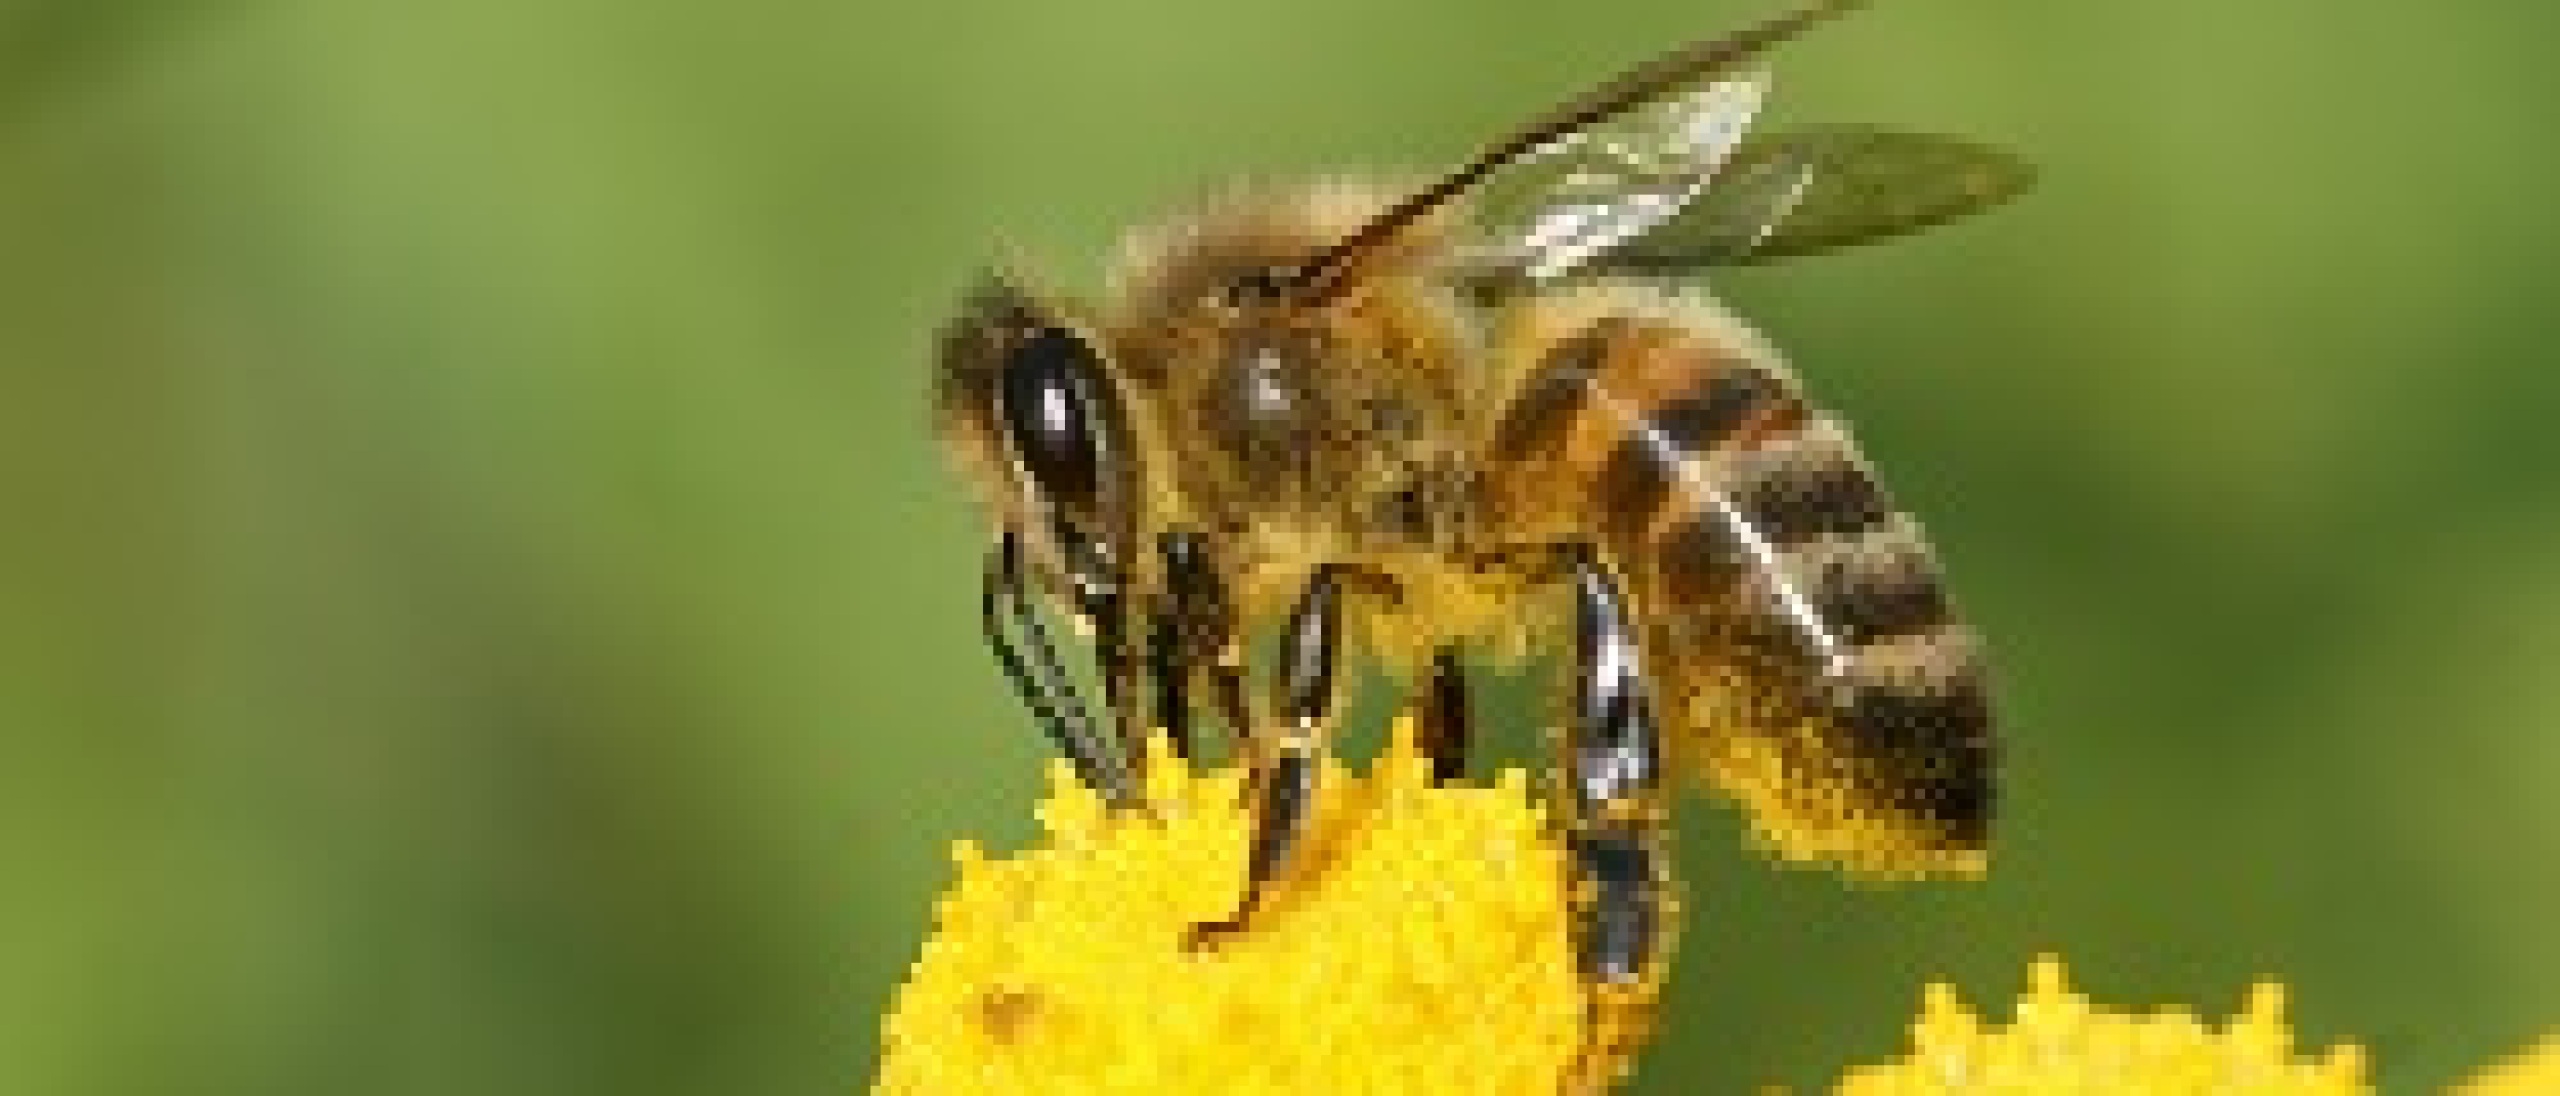 Lezing Jacques van Alphen: Waarom de bijen sterven, een vergeten oorzaak.